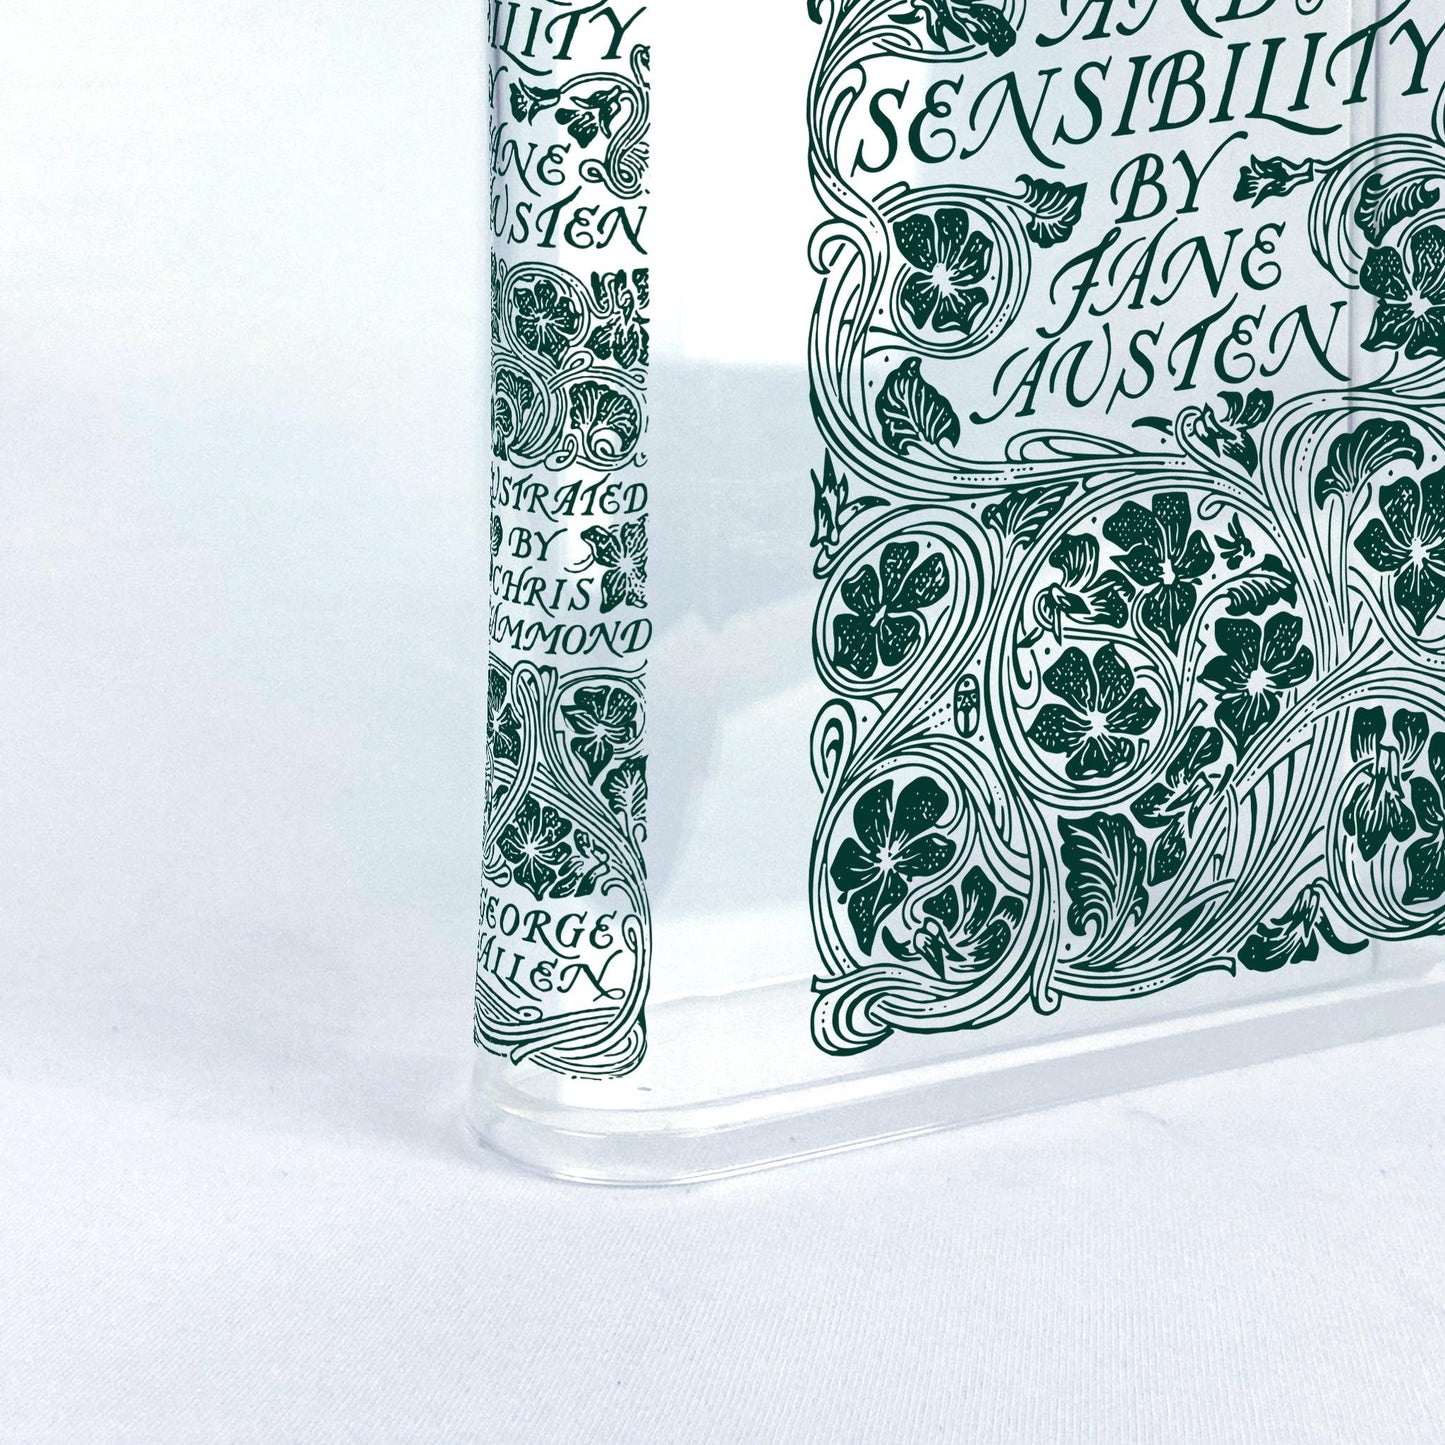 Sense and Sensibility Acrylic Bookish Vase - Bookish Vase